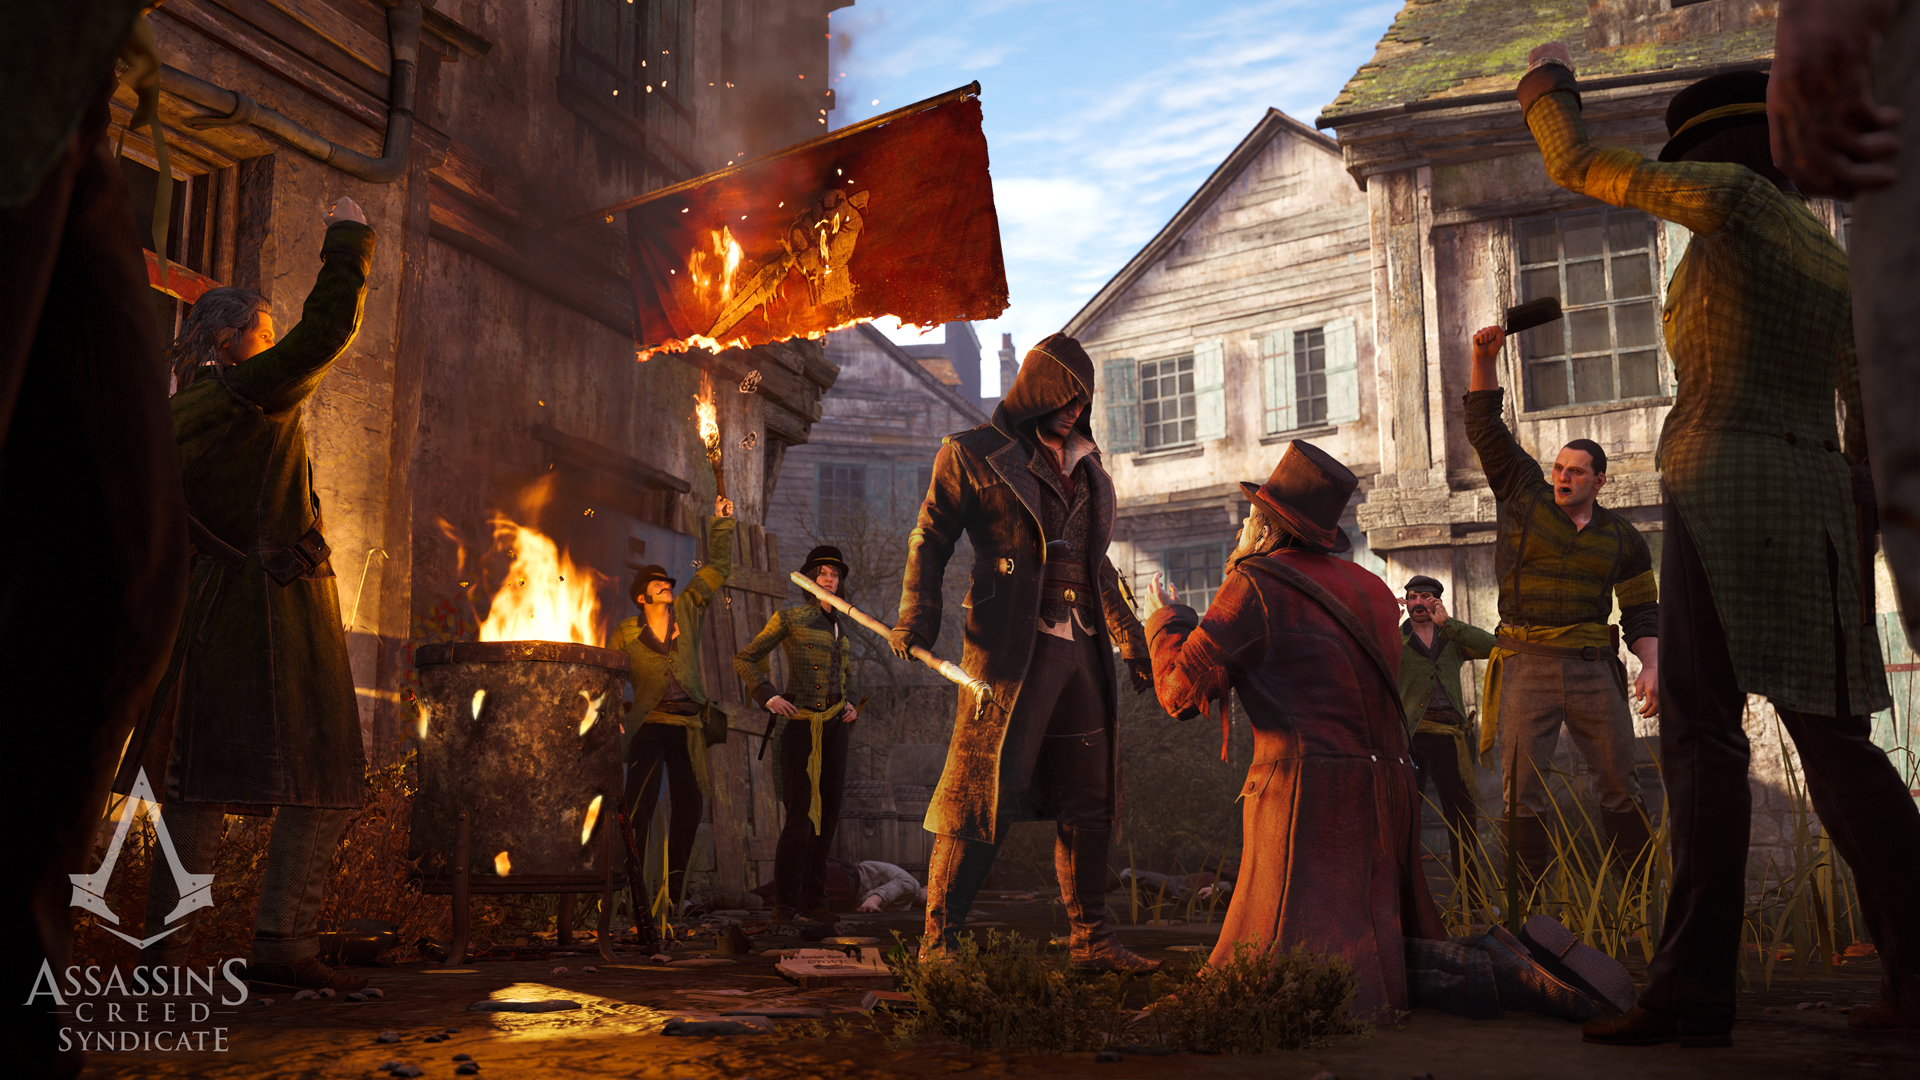 Immagine pubblicata in relazione al seguente contenuto: Ubisoft pubblica un nuovo trailer e screenshot di Assassin's Creed Syndicate | Nome immagine: news23123_Assassin-s-Creed-Syndicate_1.jpg